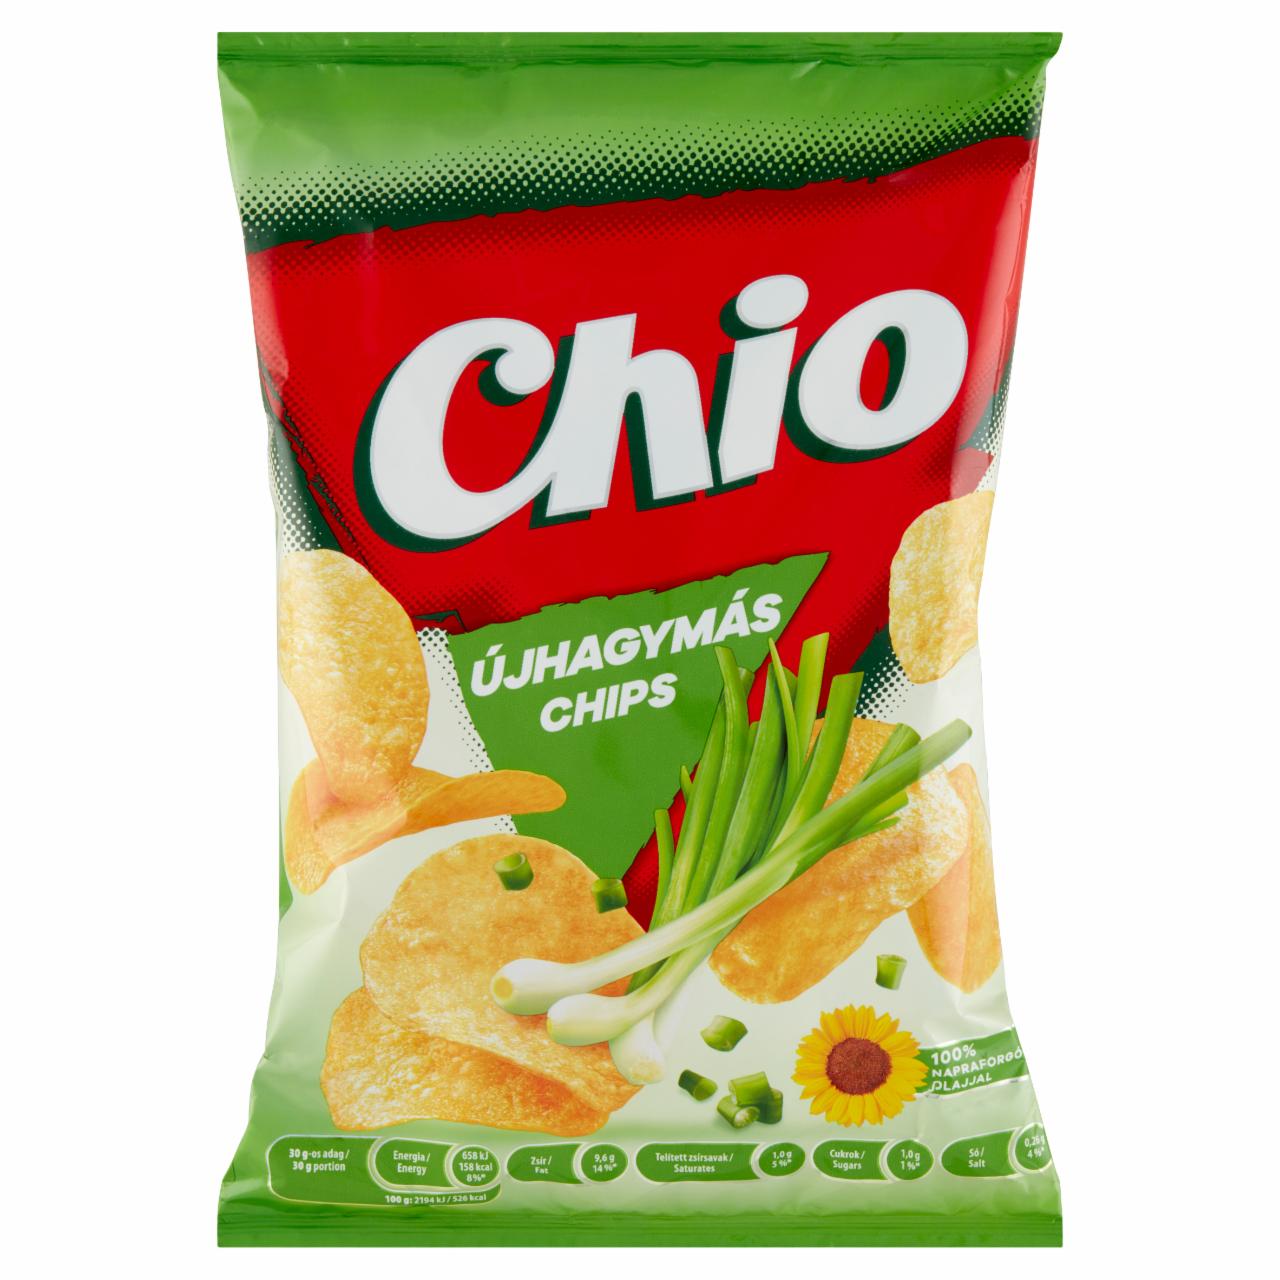 Képek - Újhagymás chips Chio